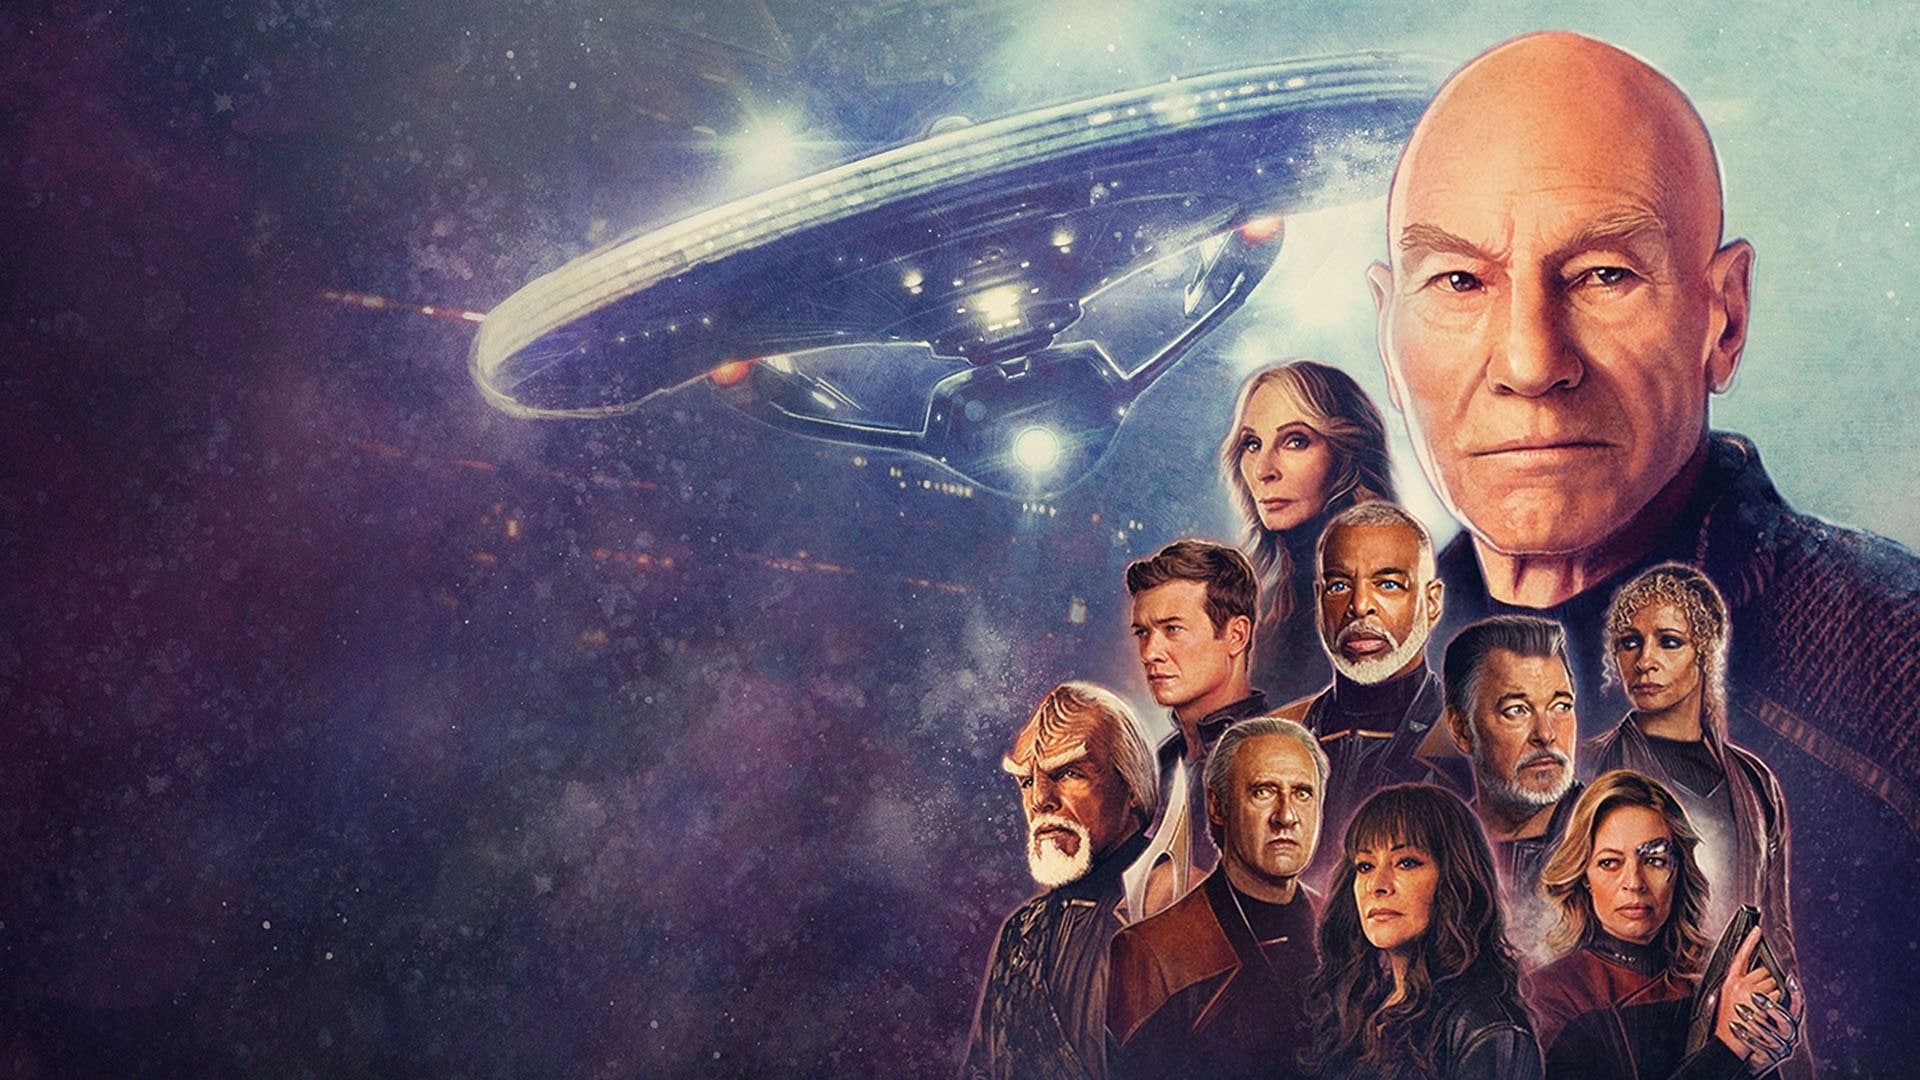 Arte clave de la tercera temporada de Star Trek: Picard, que muestra al elenco principal.